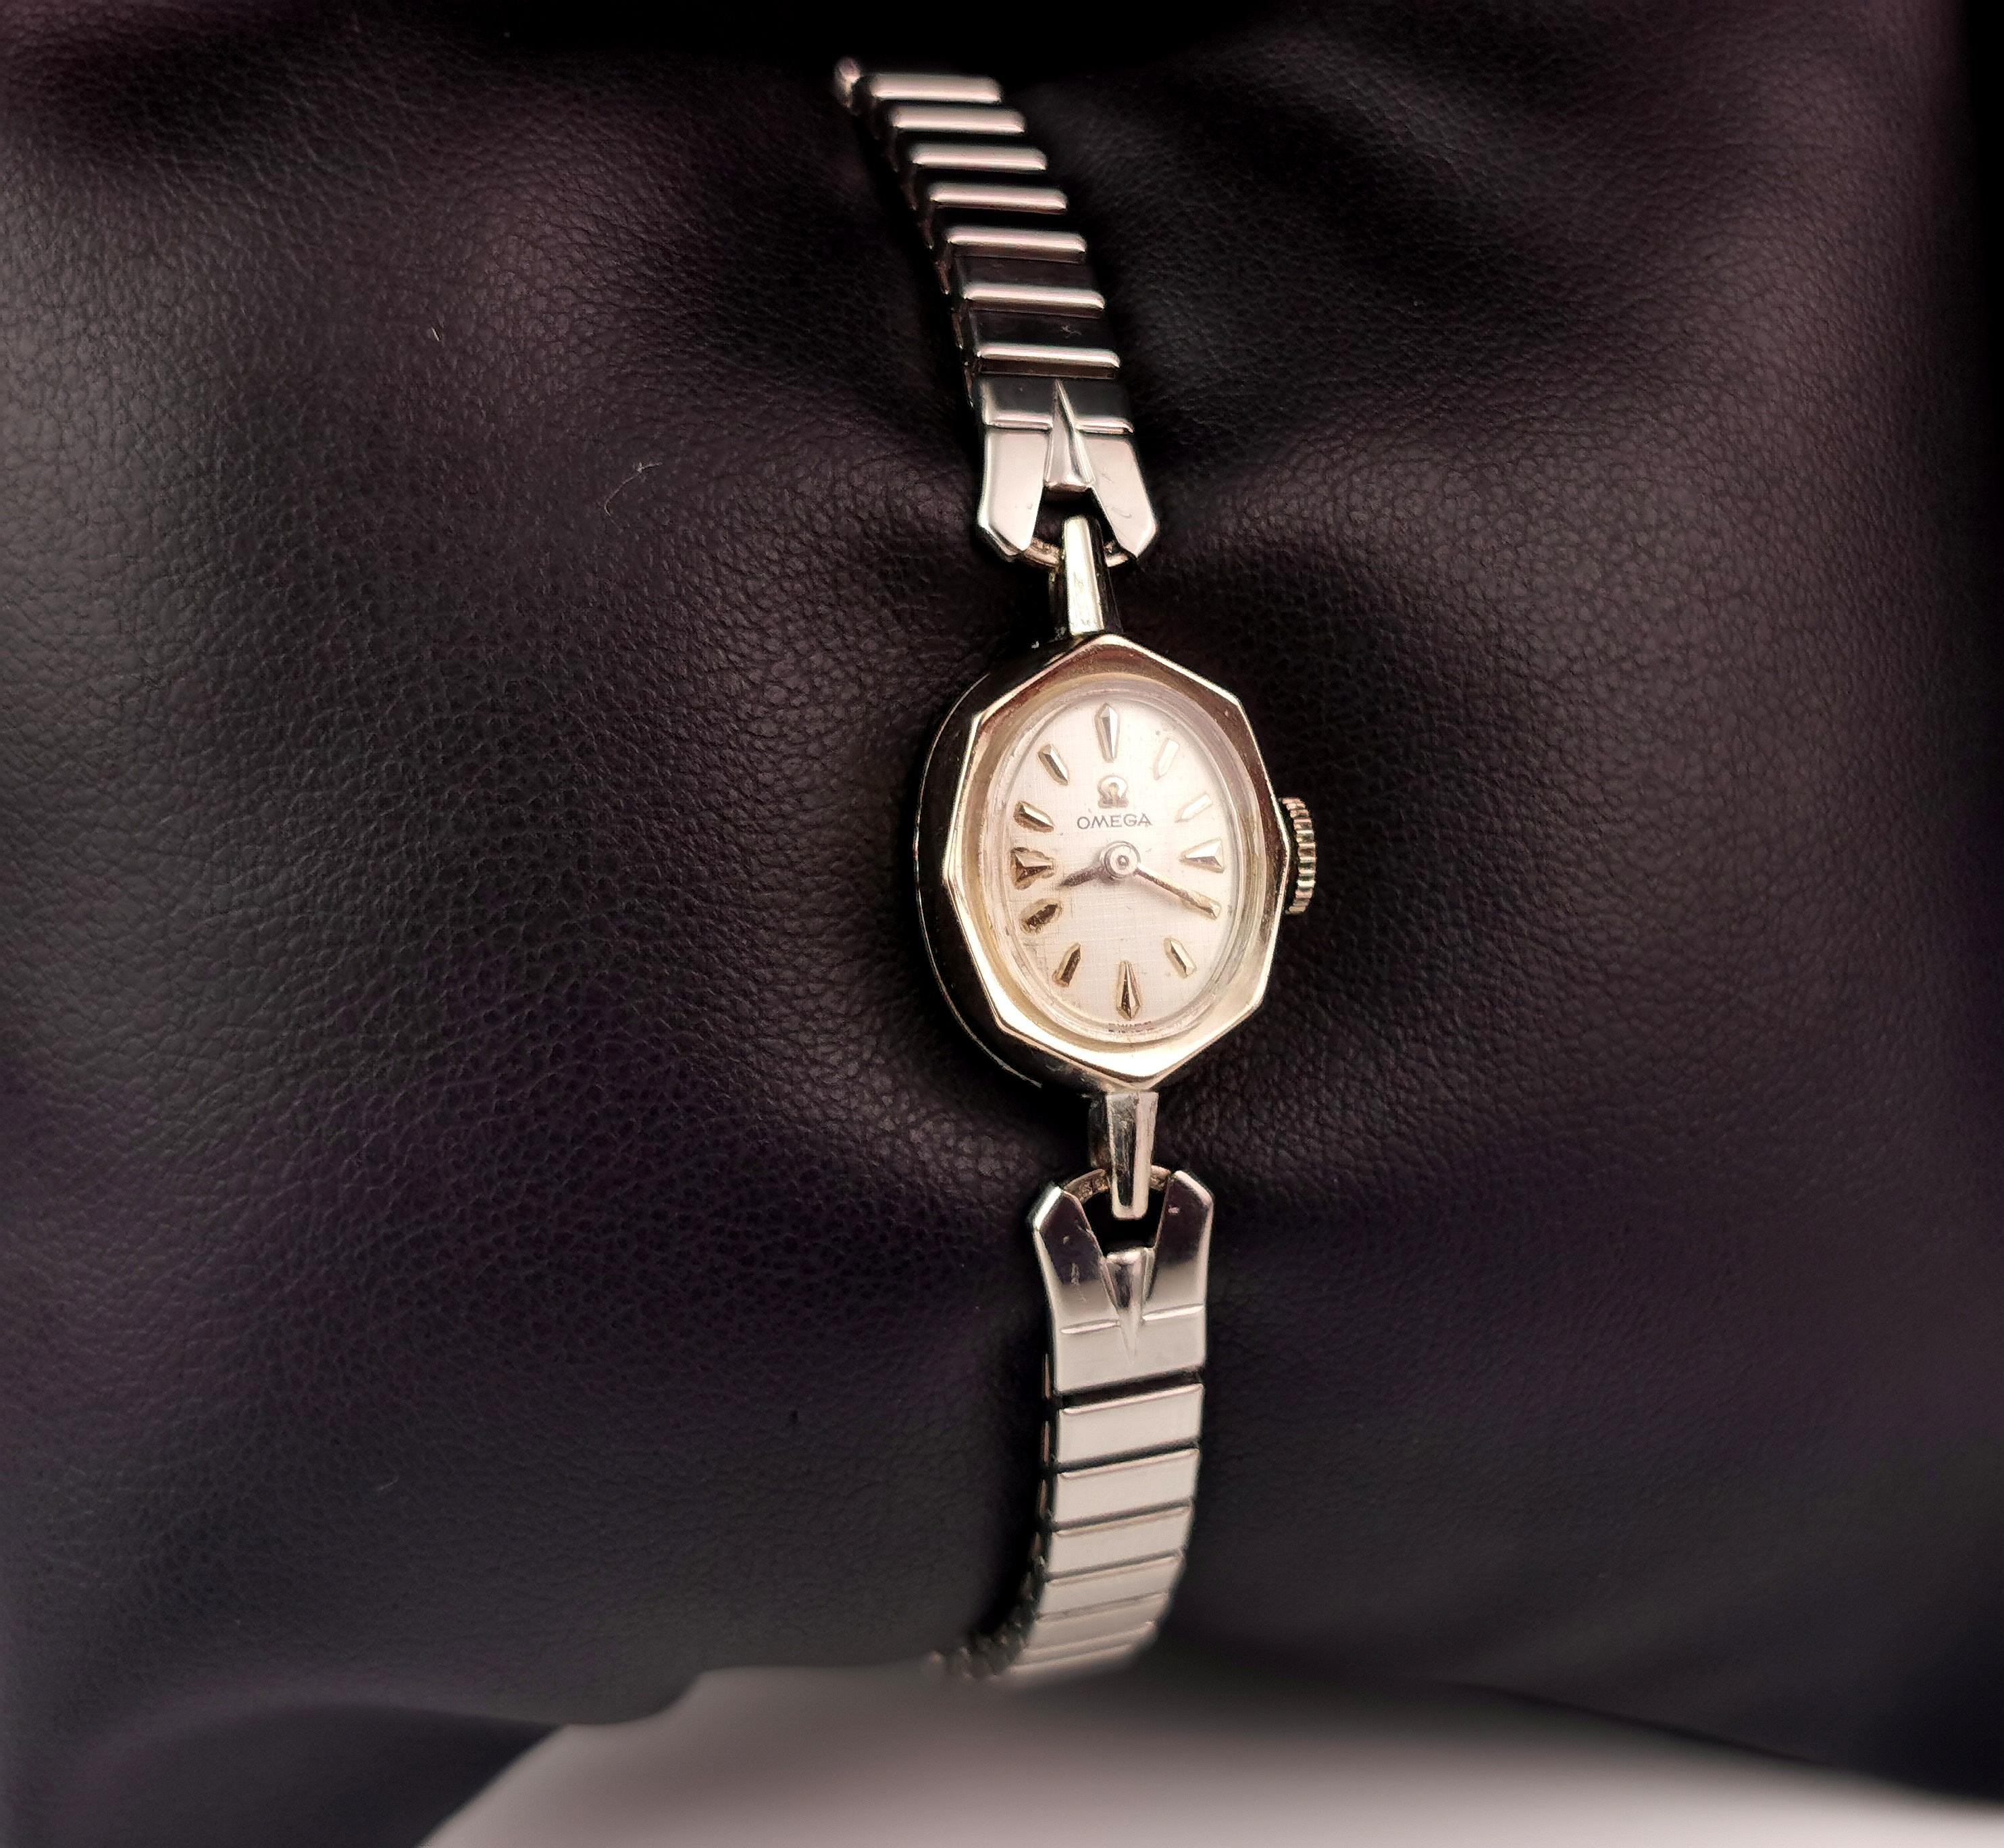 Une attrayante montre-bracelet vintage pour dames de la célèbre marque Omega.

Il s'agit d'une montre plaquée en or blanc 14ct avec un cadran argenté, des chiffres et des aiguilles noirs et une montre-bracelet à remontage manuel.

Marqué sur le